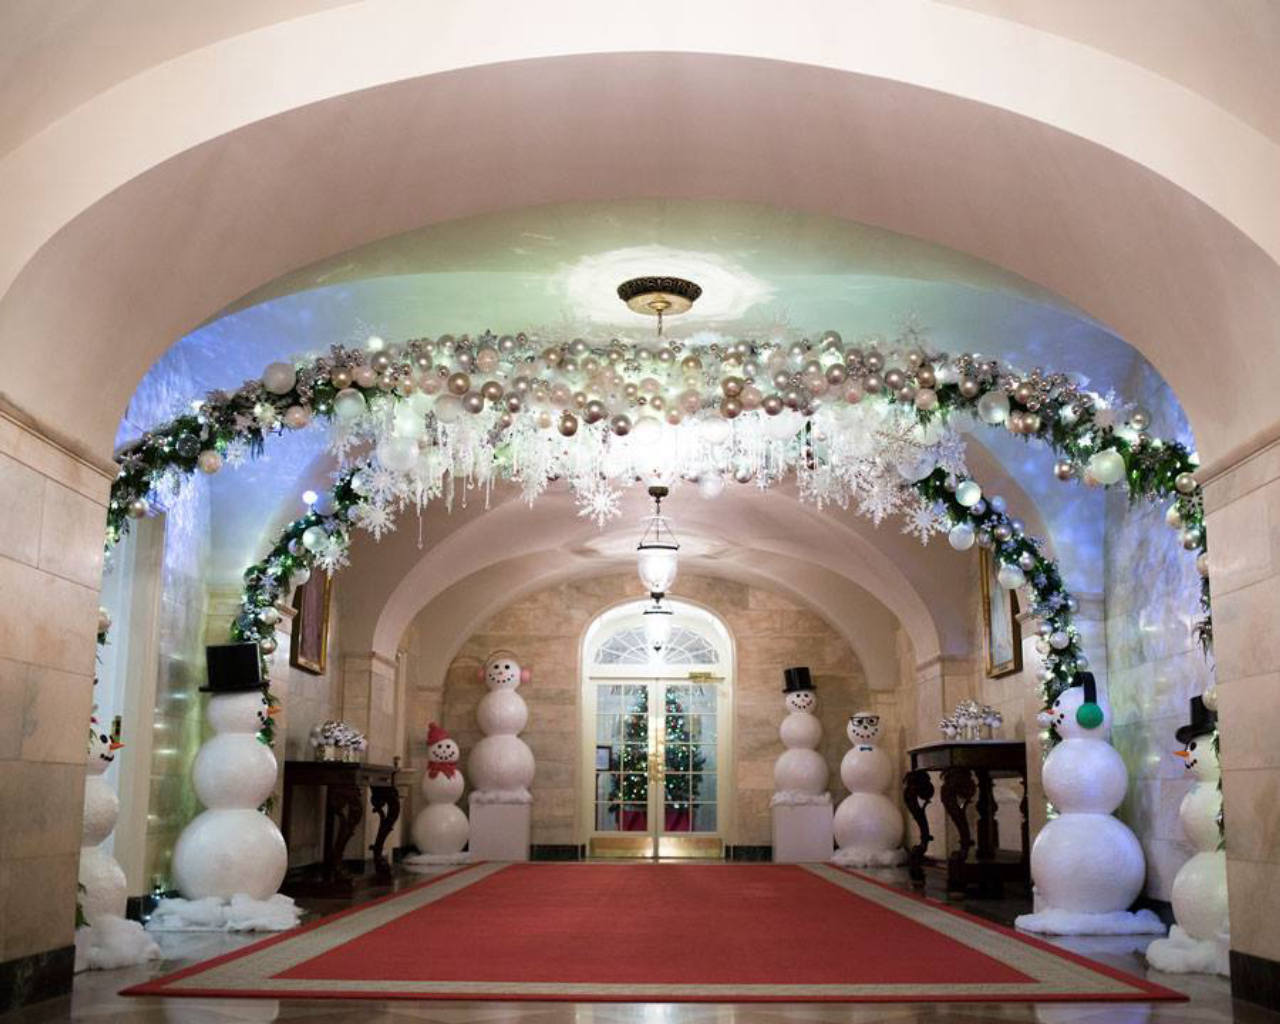 Um corredor de bonecos de neve leva até a entrada principal.<br>Foto: Reprodução Facebook The White House. 